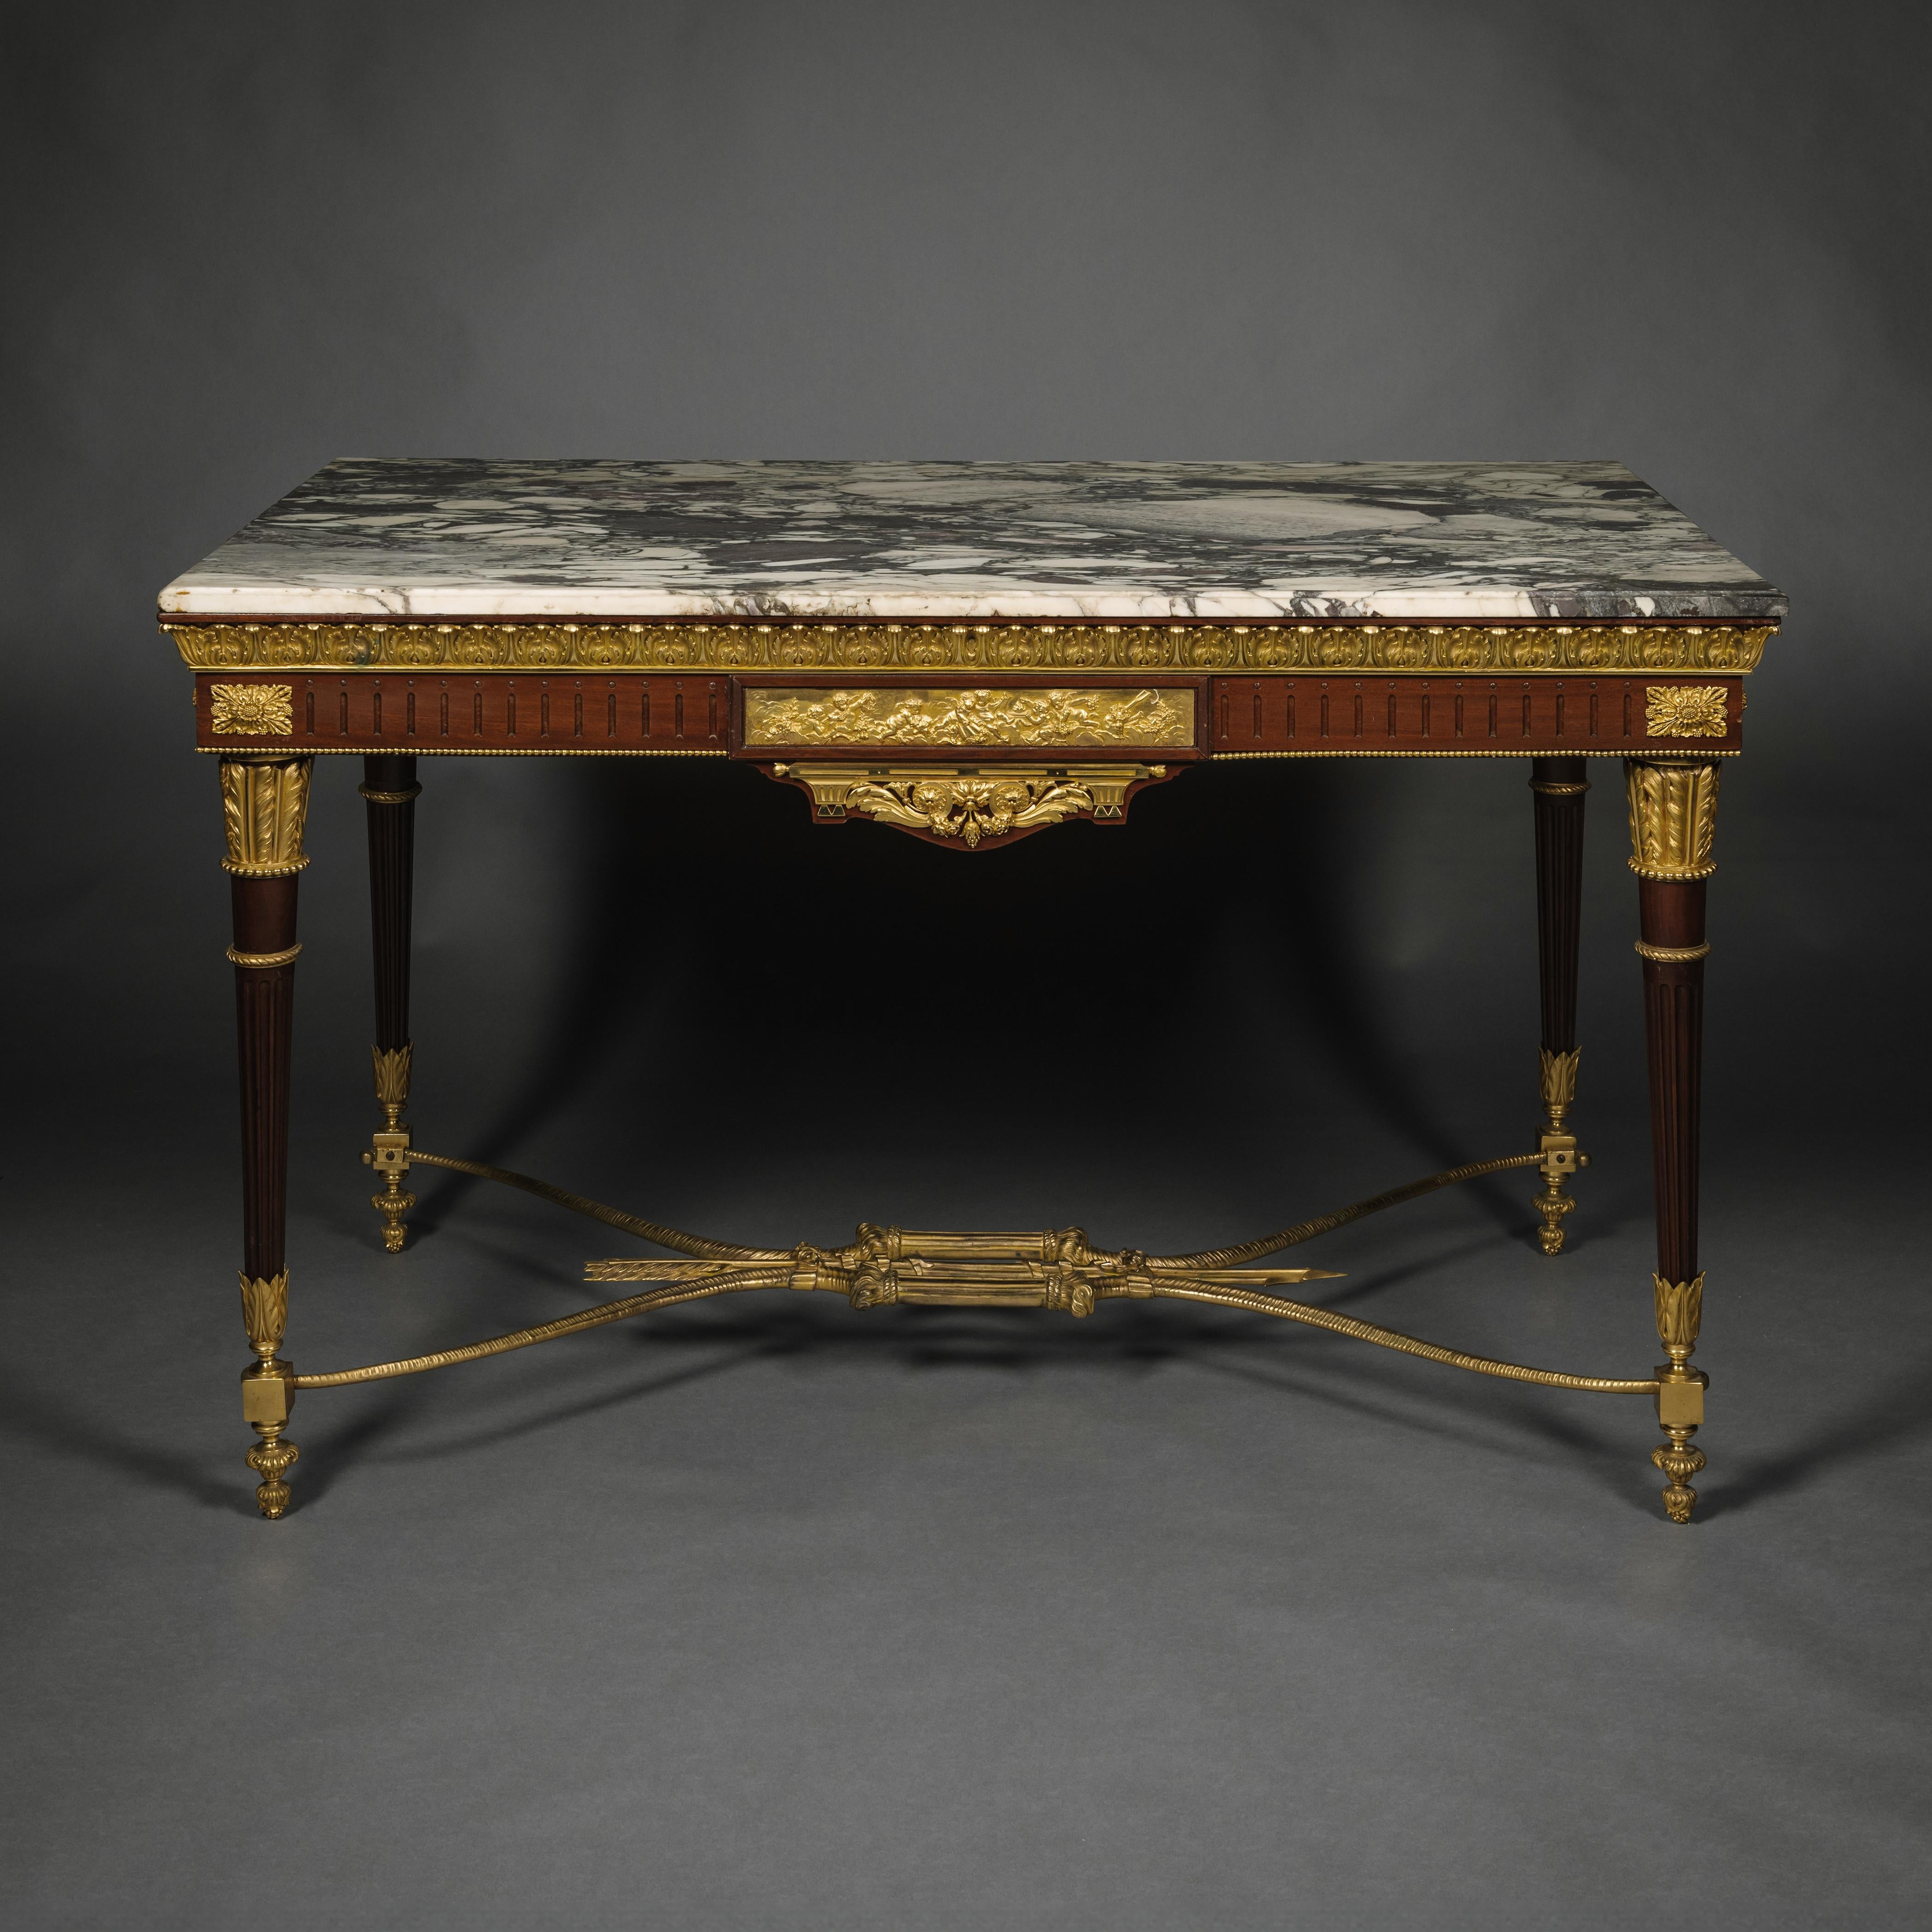 Table de centre en acajou monté en bronze doré de style Louis XVI.

La table avec un plateau en marbre de Villefranche de Conflent aux motifs violets doux sur fond blanc. Sous le plateau de marbre se trouve une bordure de bronze doré à feuilles